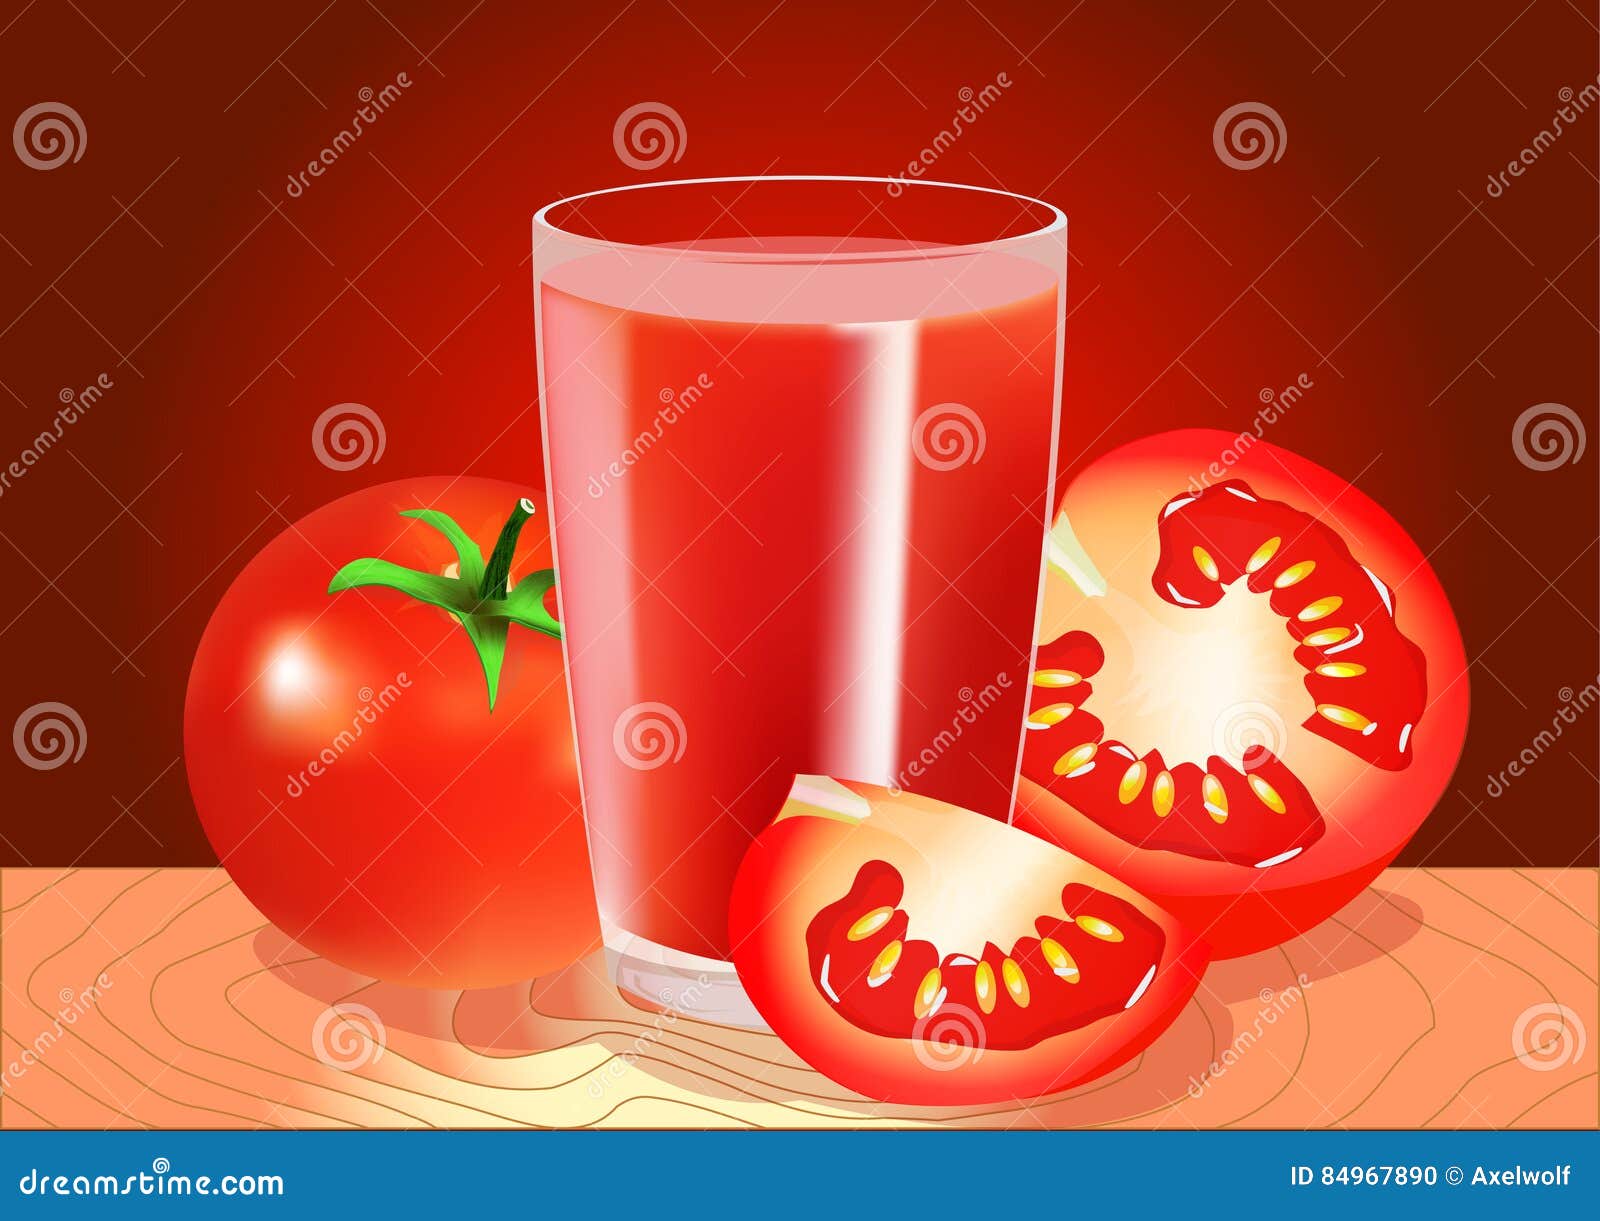 欧芹 番茄 玻璃杯 番茄汁 4K高清美食壁纸_图片编号326032-壁纸网